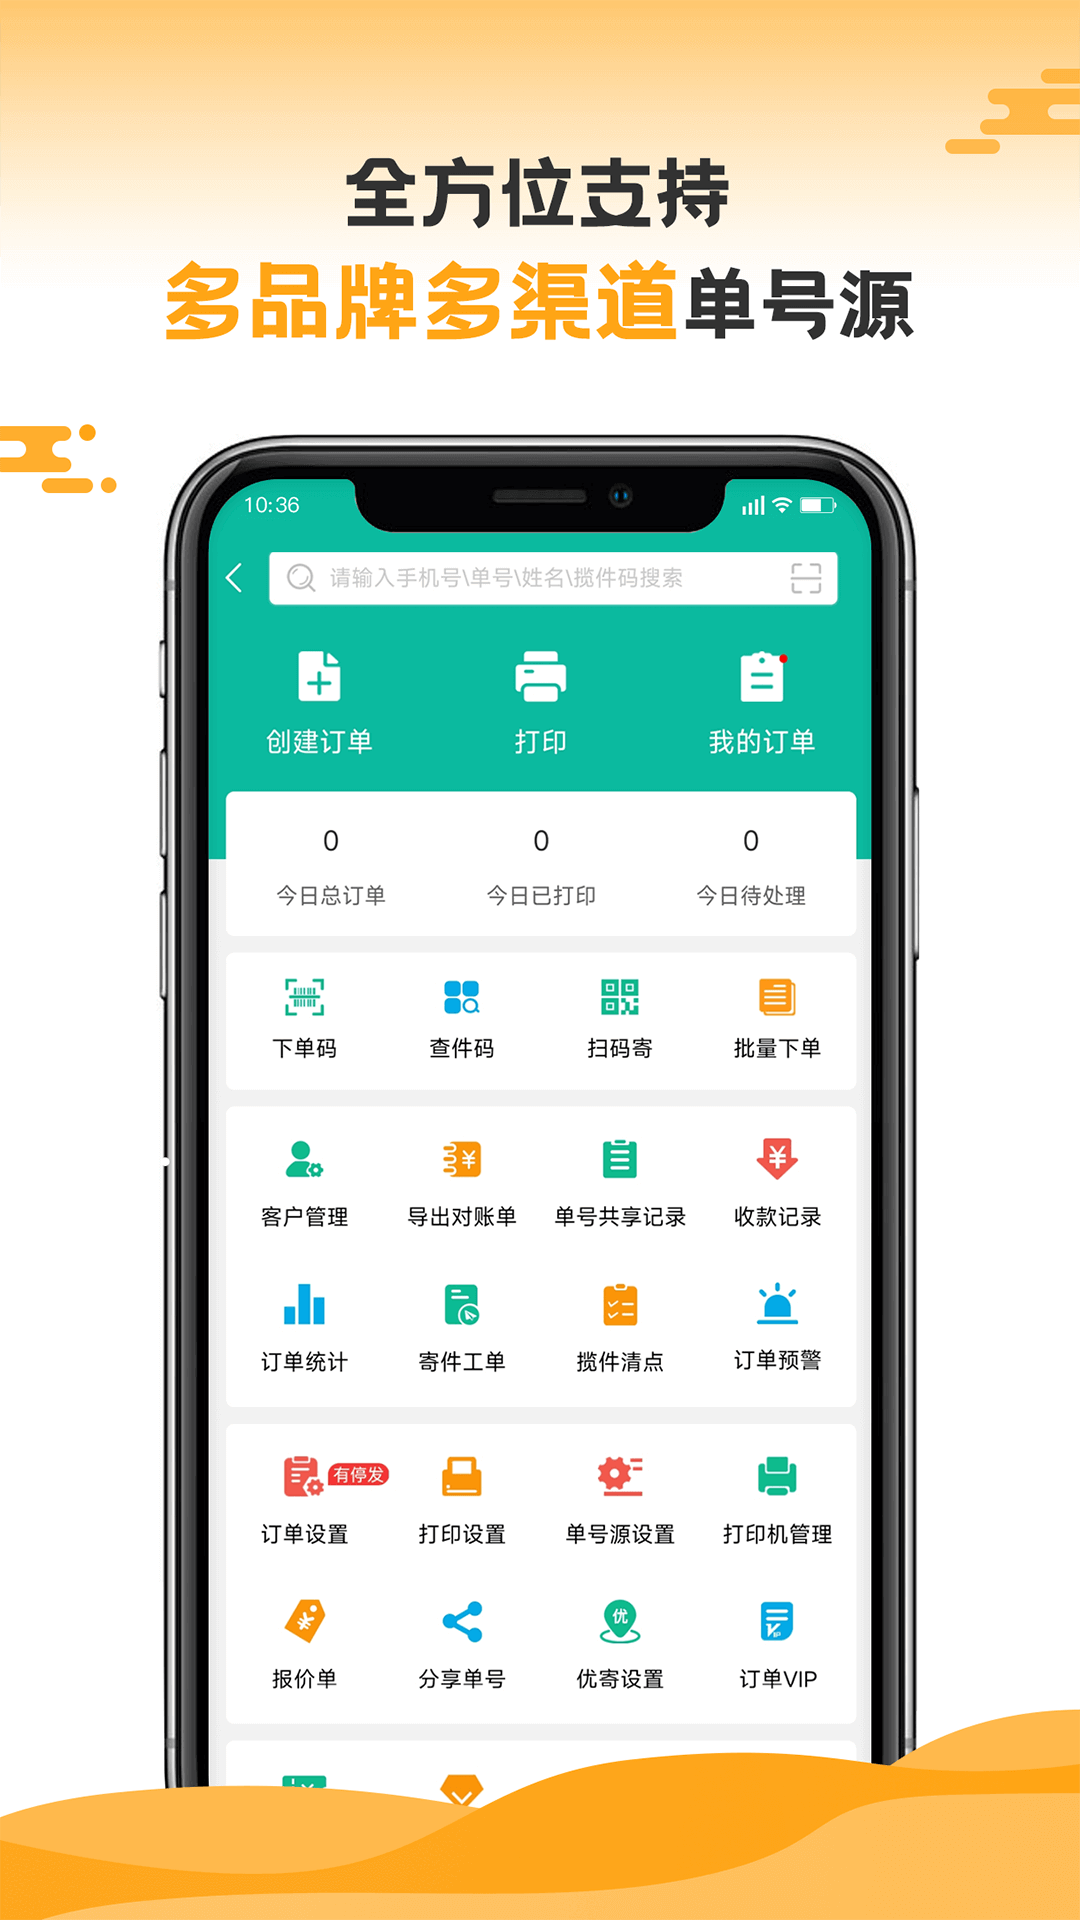 快宝驿站快递员app v10.5.6 官方安卓版1